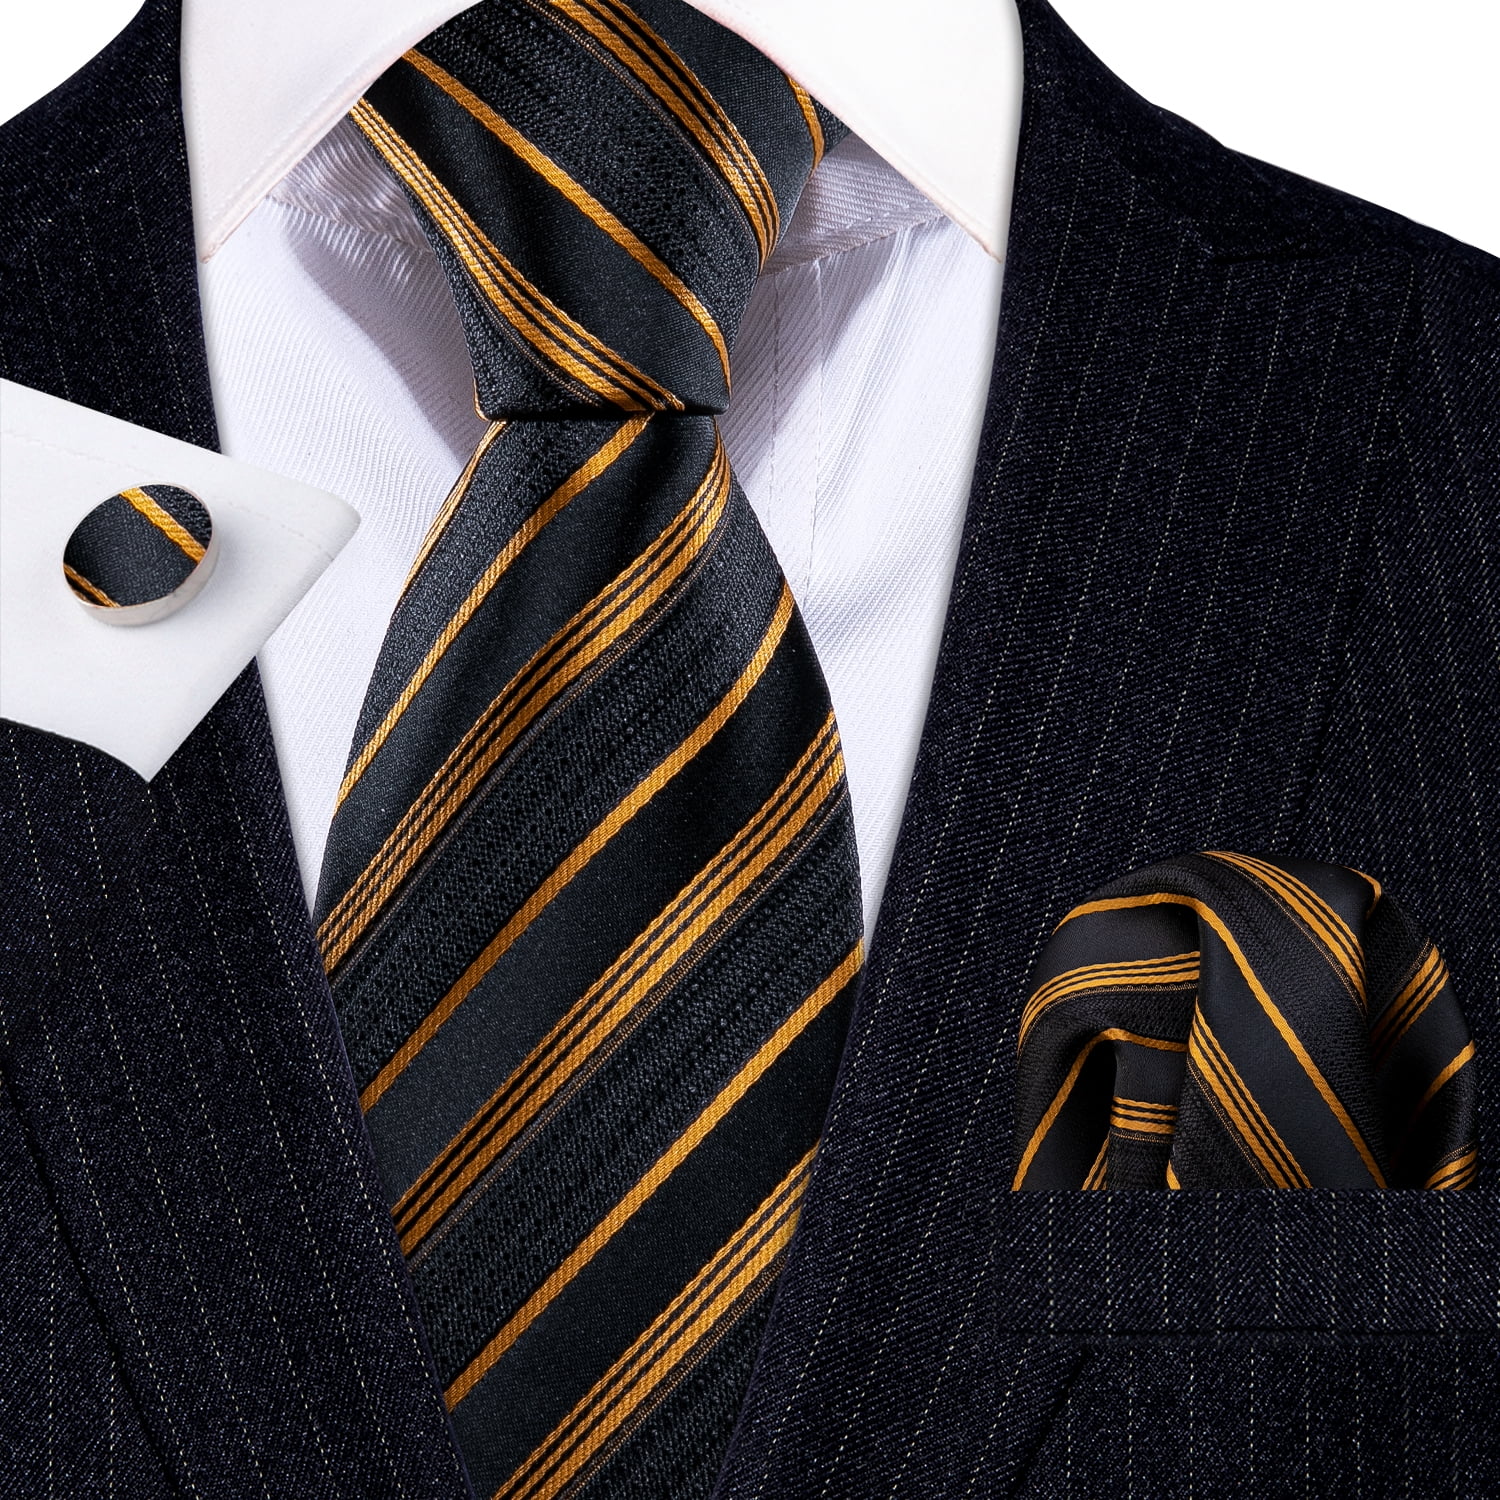 Barry.Wang Men's Ties Formal Stripe Necktie Set with Handkerchief ...